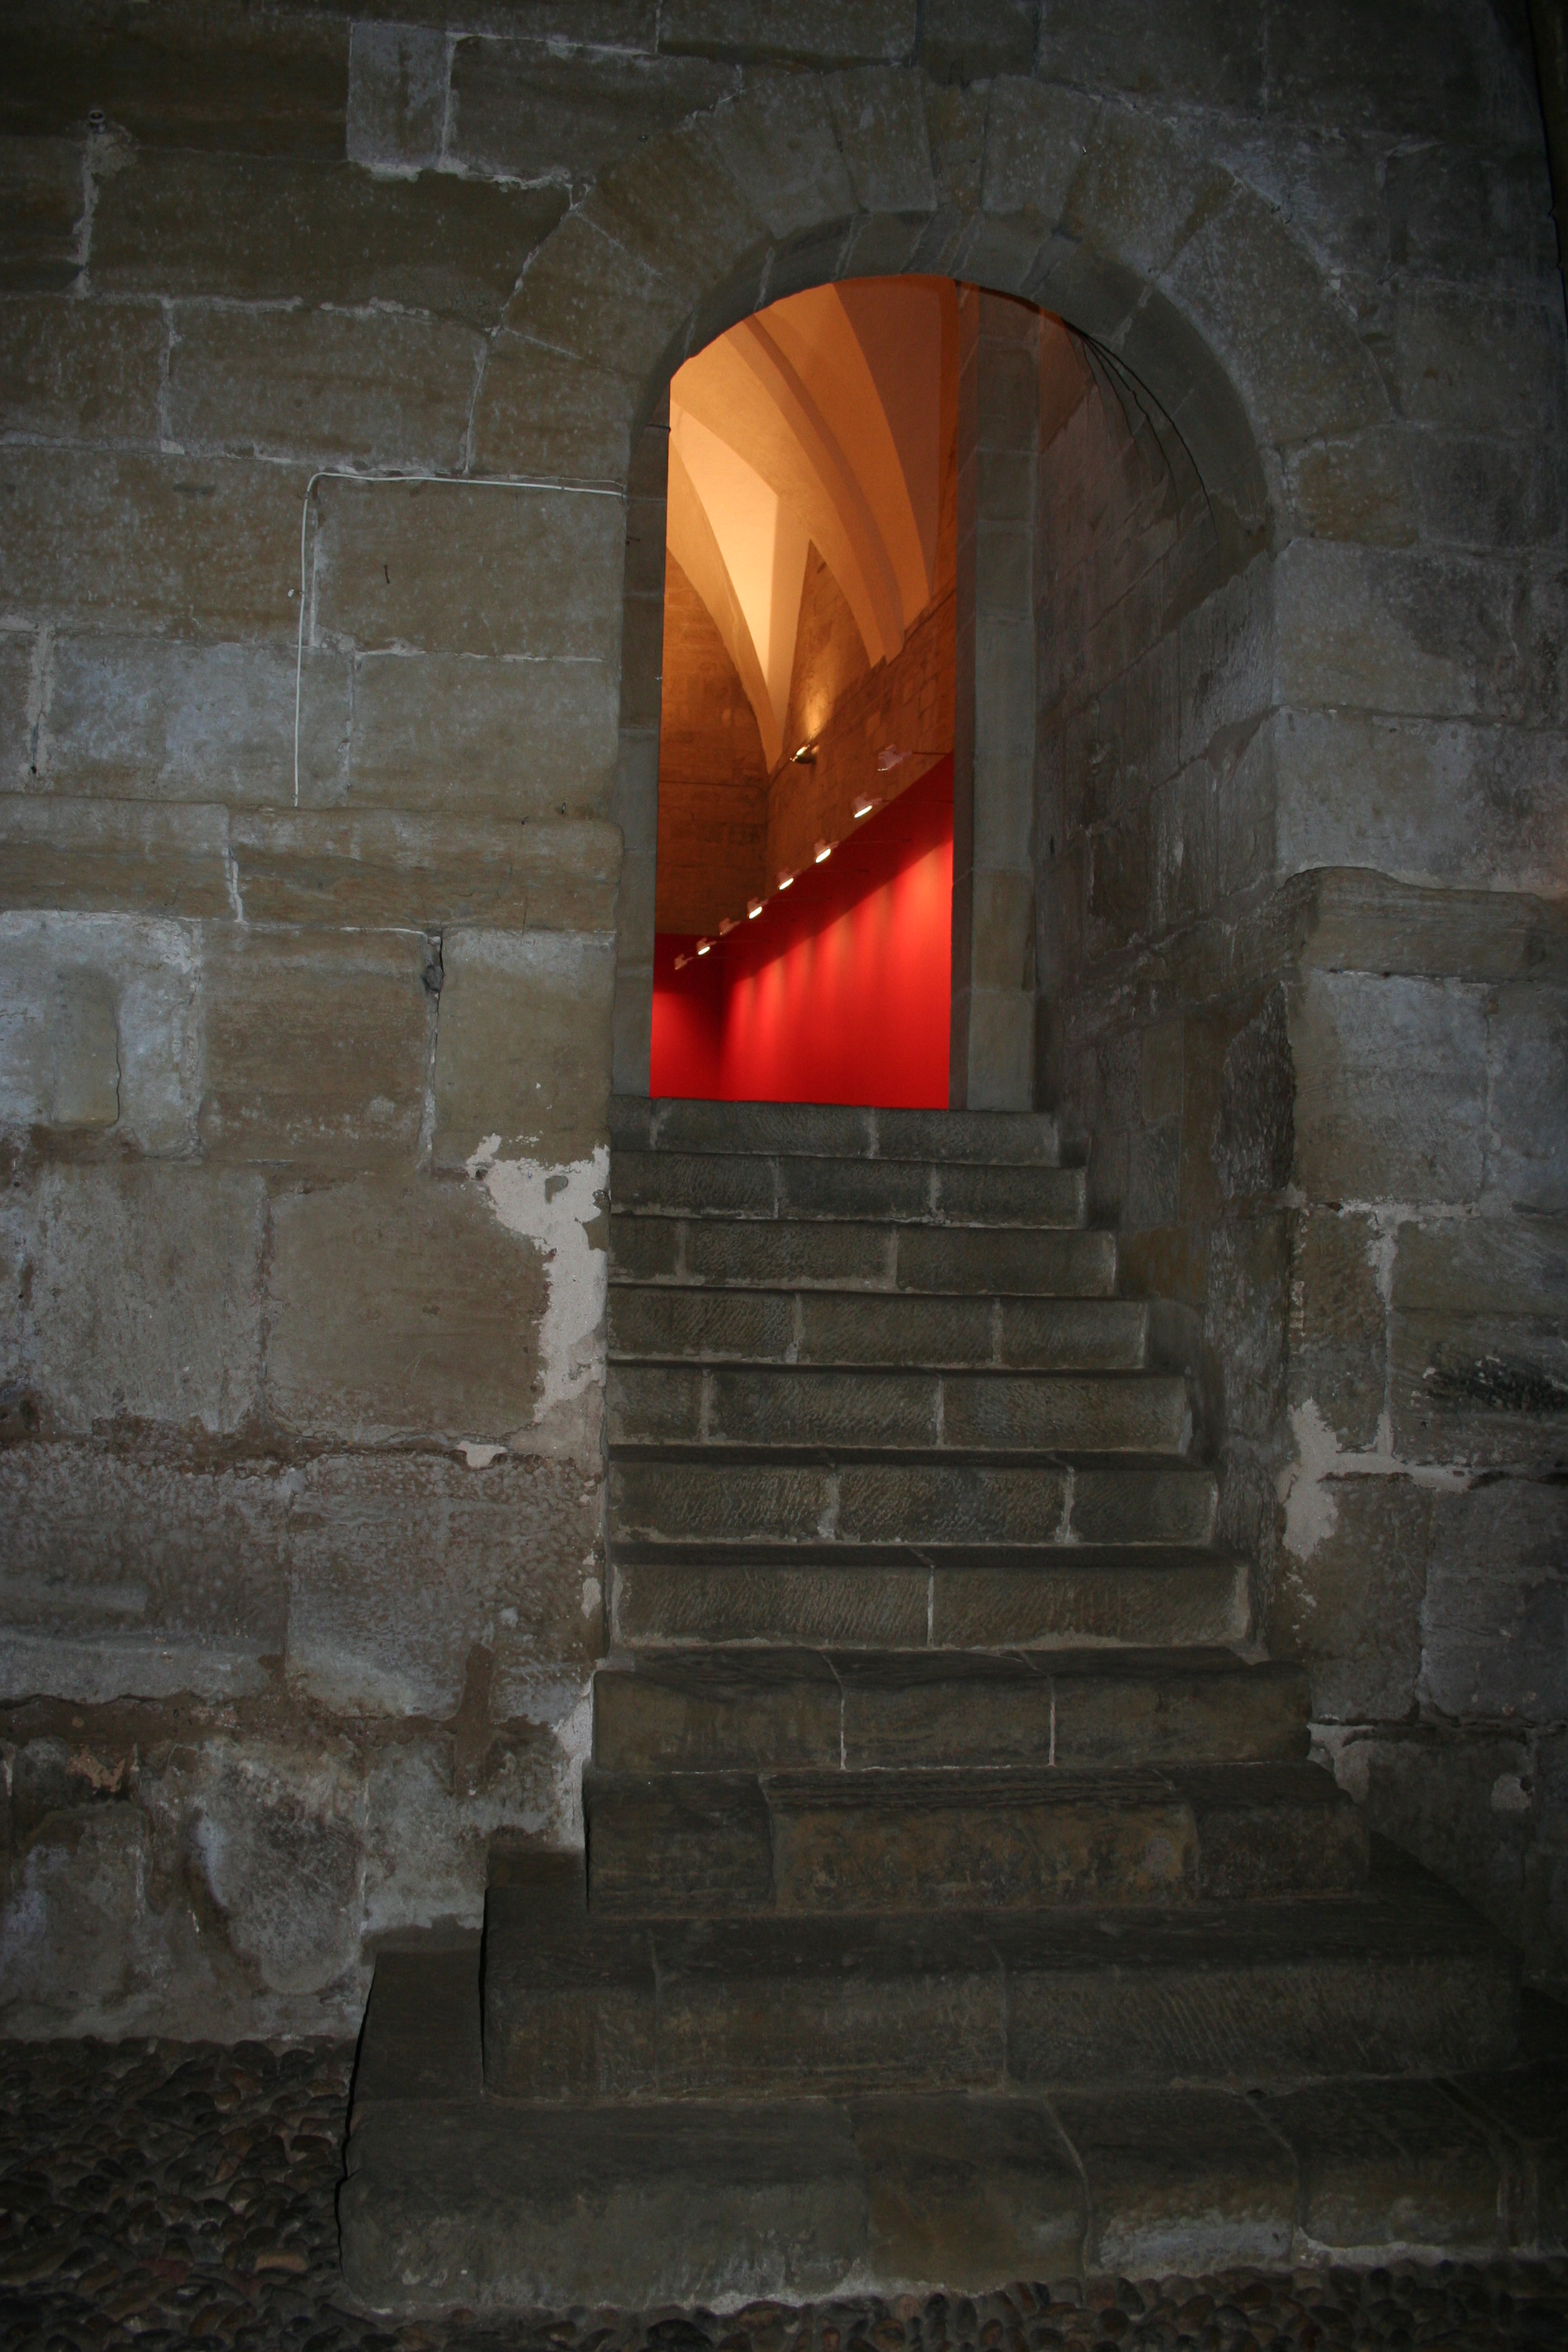 Escaleras de acceso a la Sala de la Campana desde el Salón del Trono. © Foto Museo de Huesca.